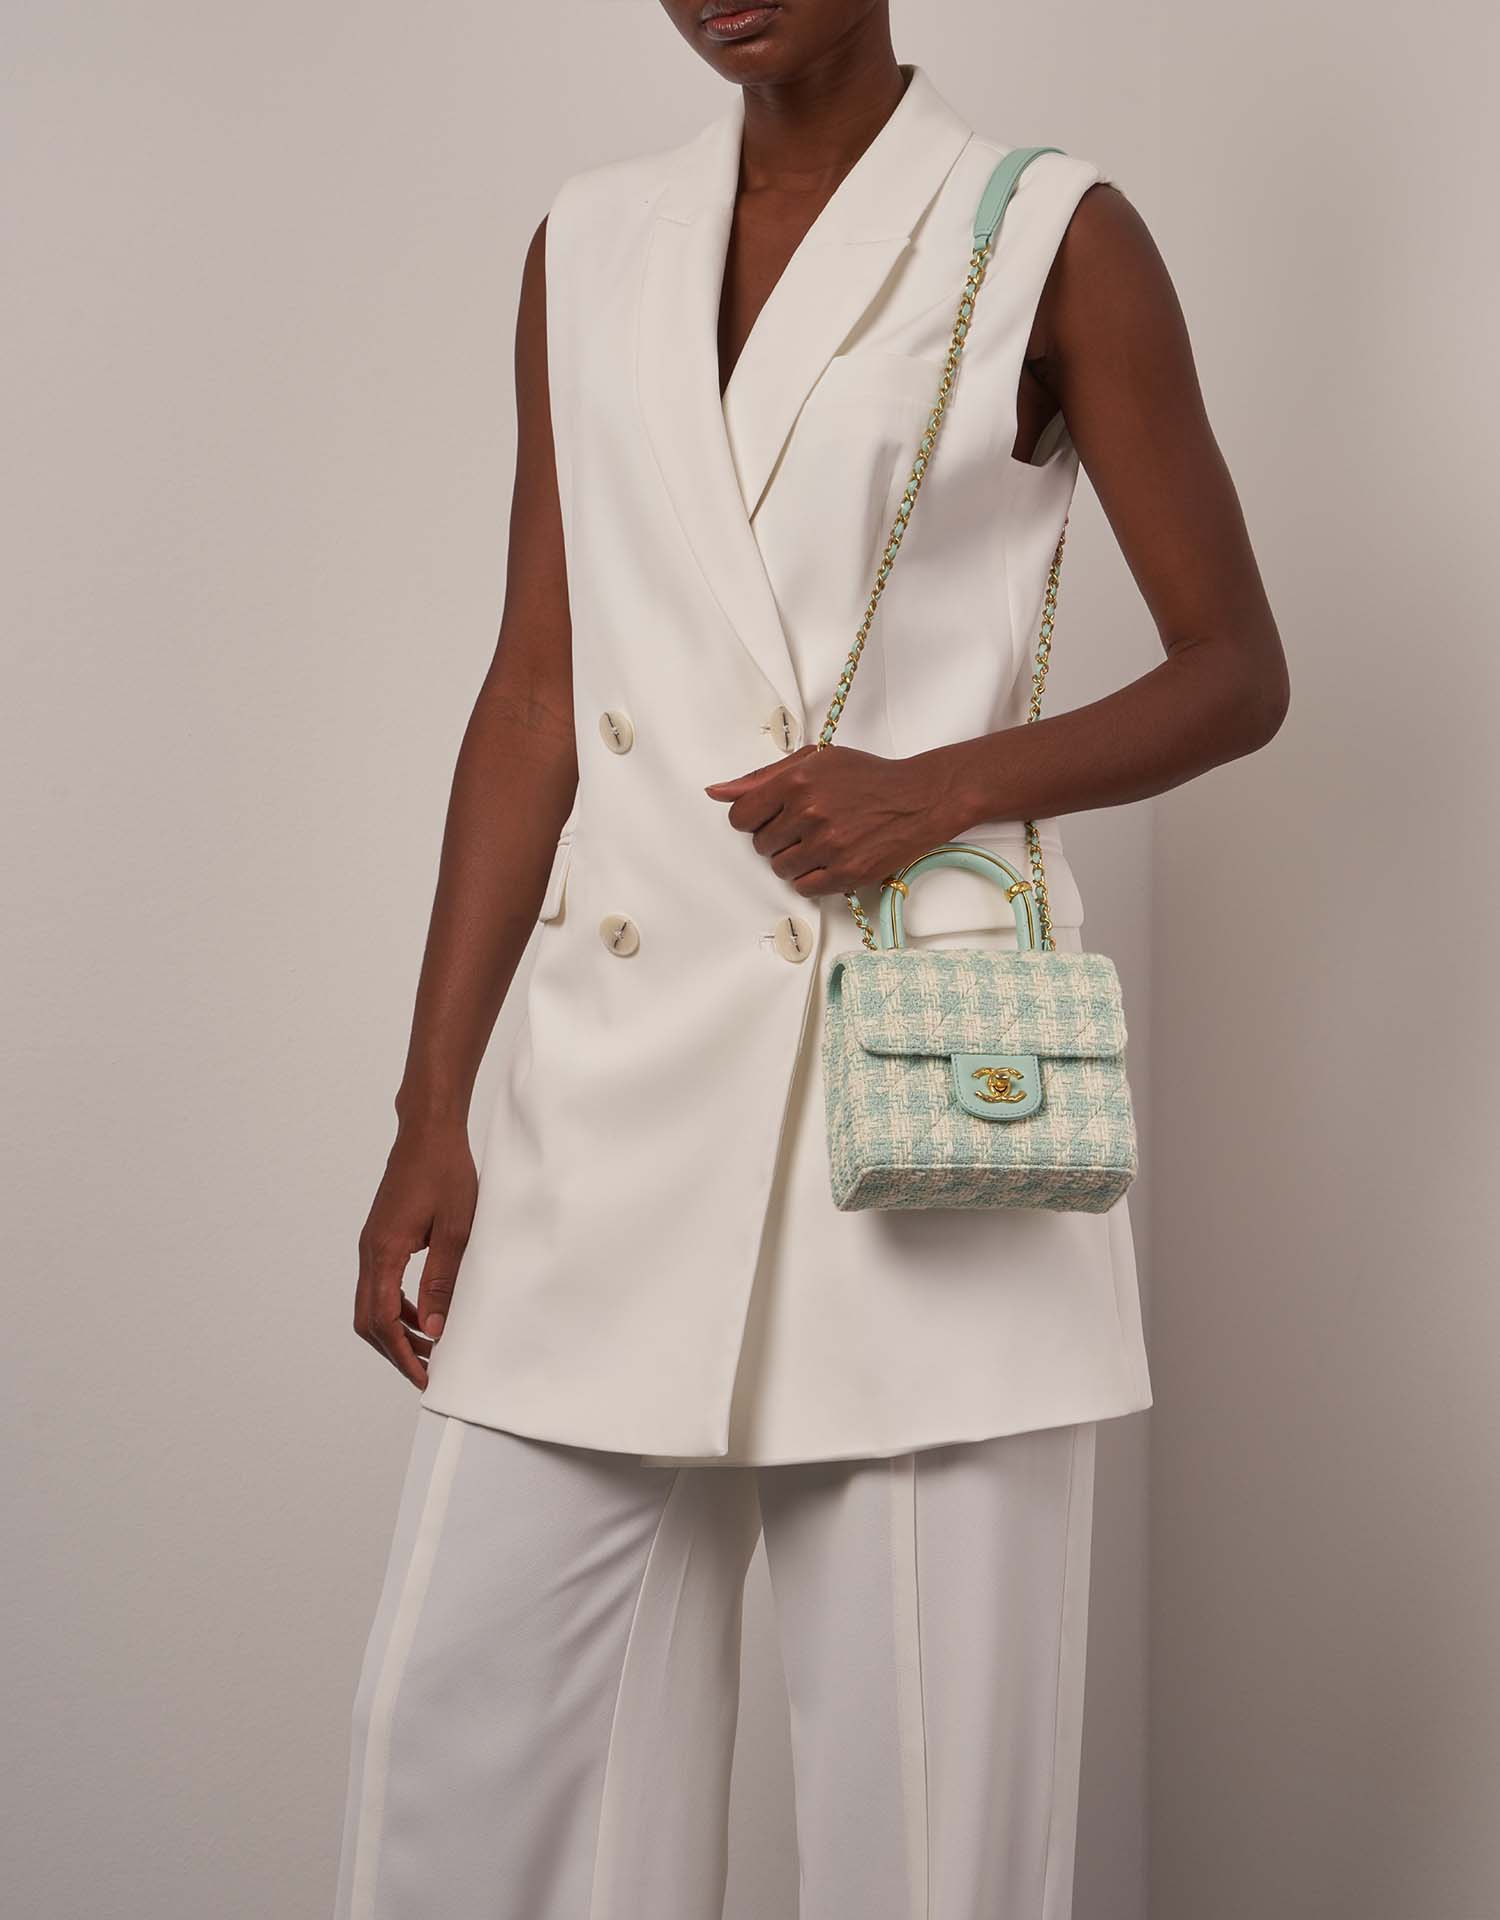 Chanel Timeless MiniSquare TiffanyBlue auf Model | Verkaufen Sie Ihre Designertasche auf Saclab.com